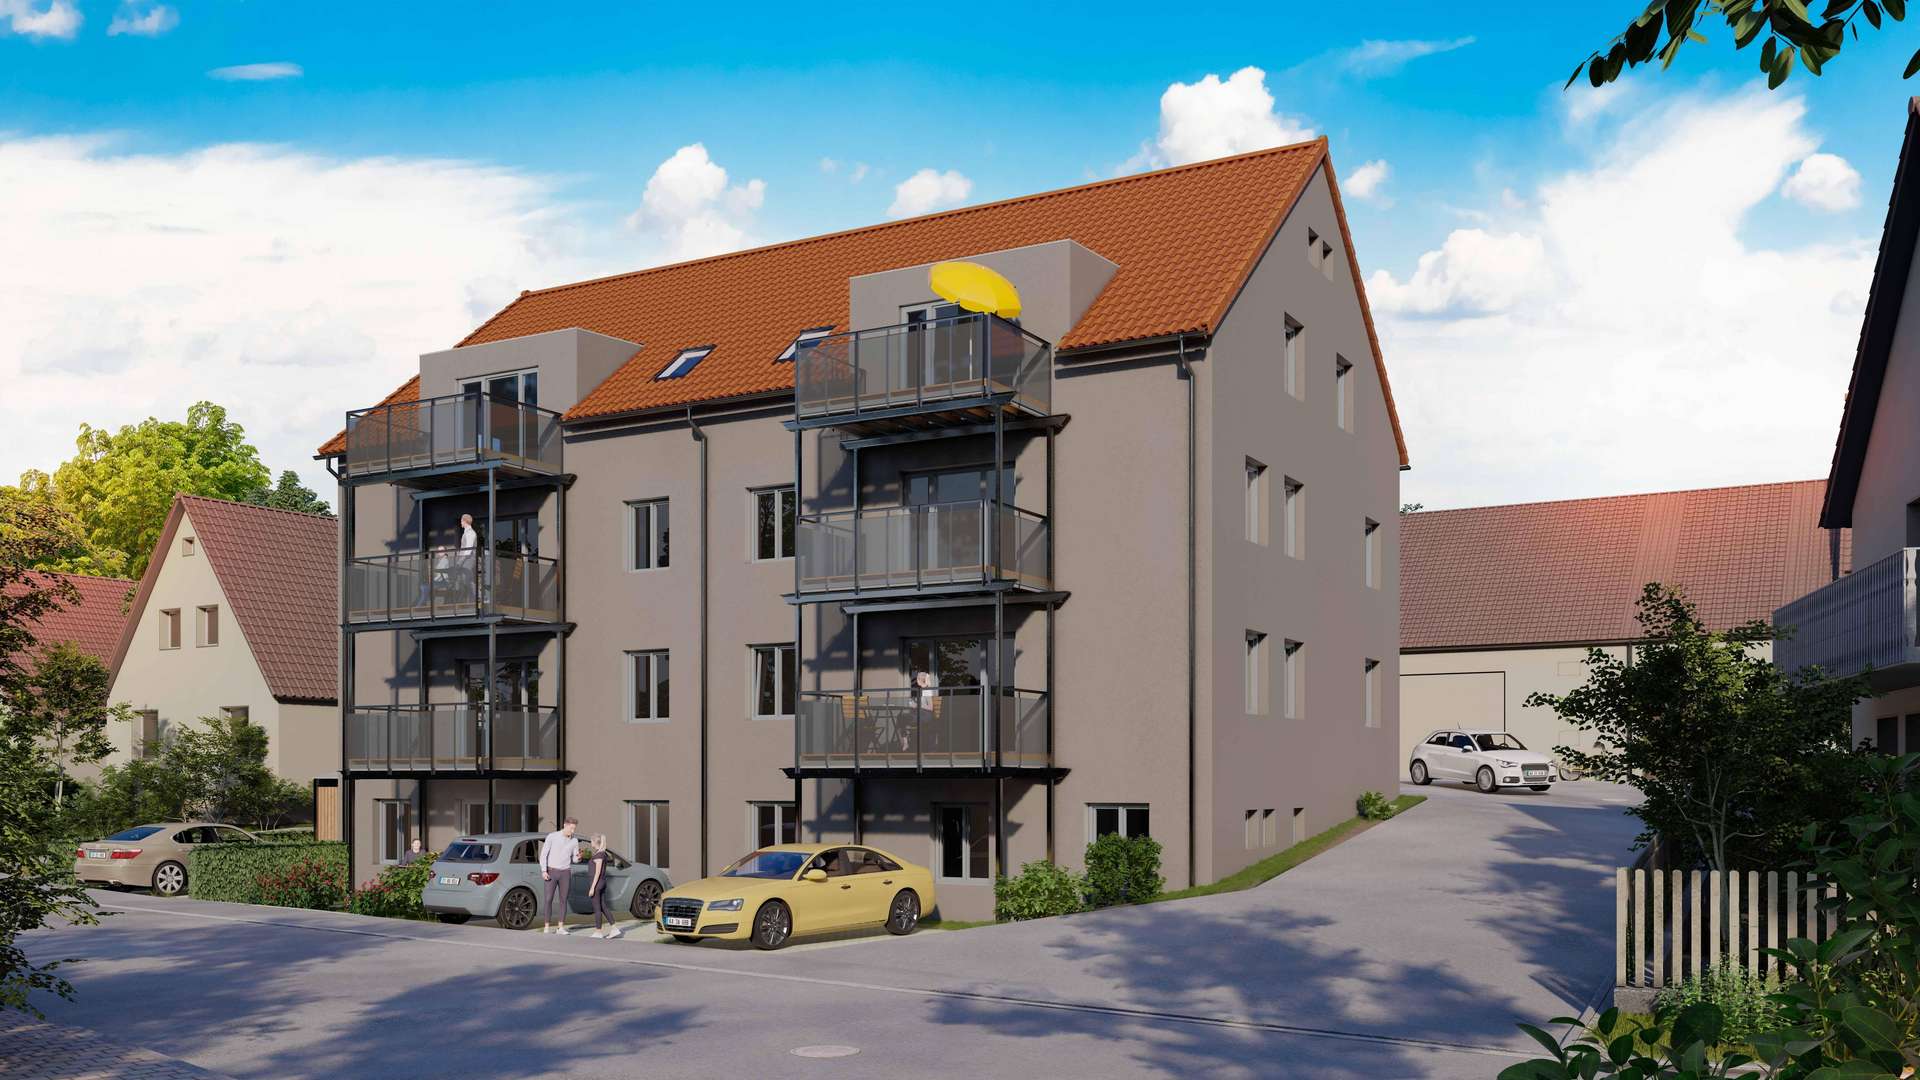 Sieben moderne und barrierefreie Wohnungen - Souterrain-Wohnung in 91747 Westheim mit 91m² als Kapitalanlage kaufen